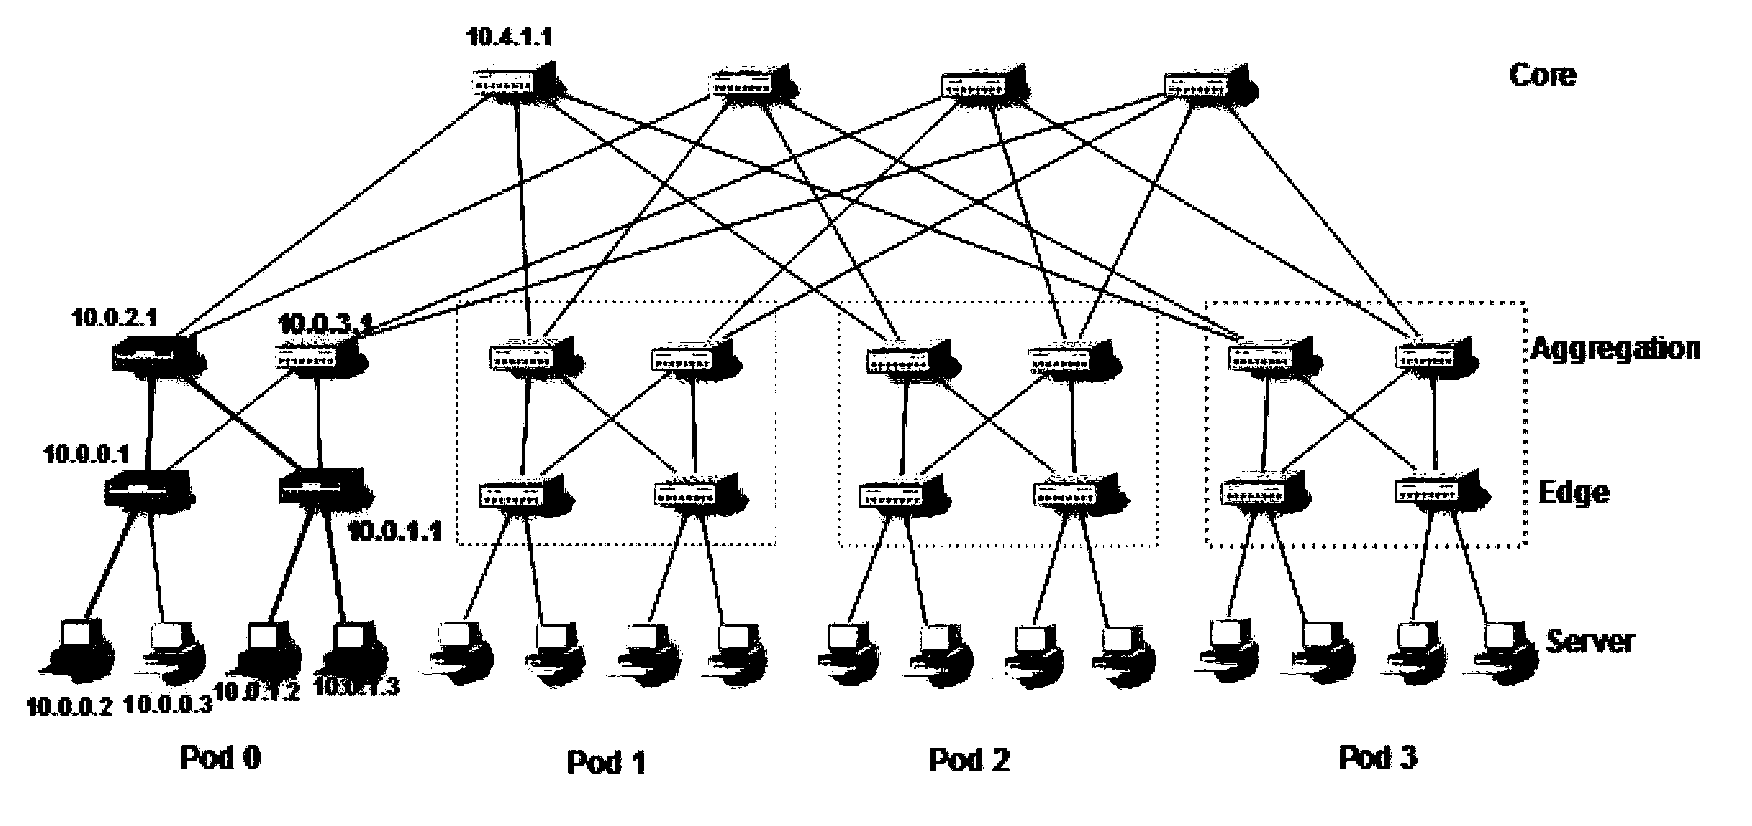 胖树结构组网数据中心内部节点IP地址的自动分配方法